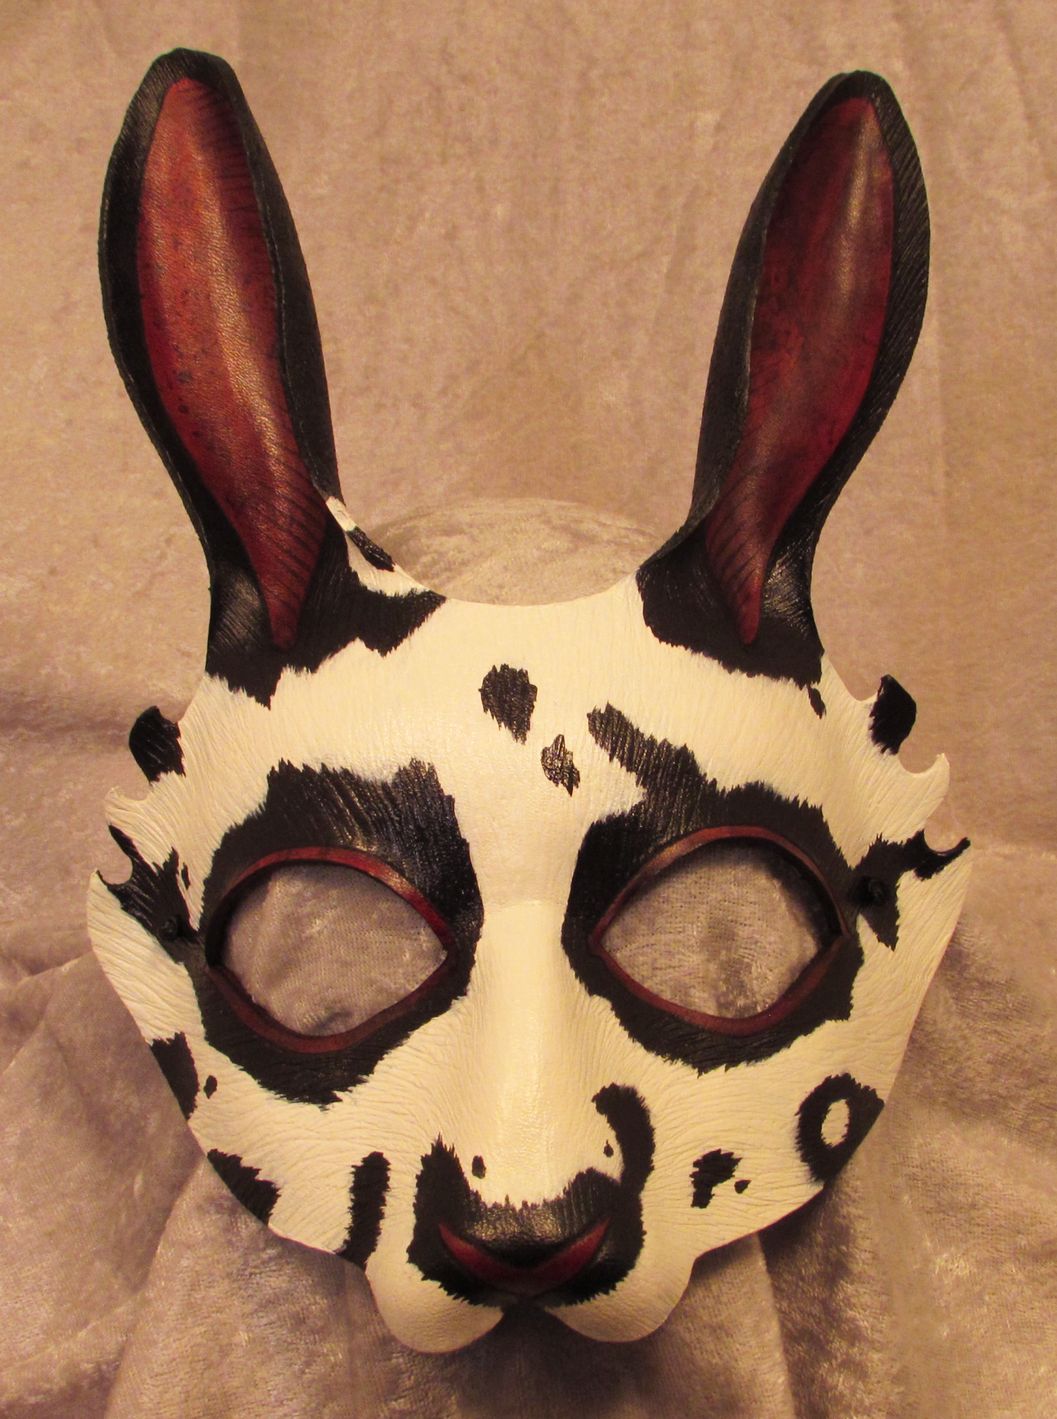 Black & white speckled rabbit mask.